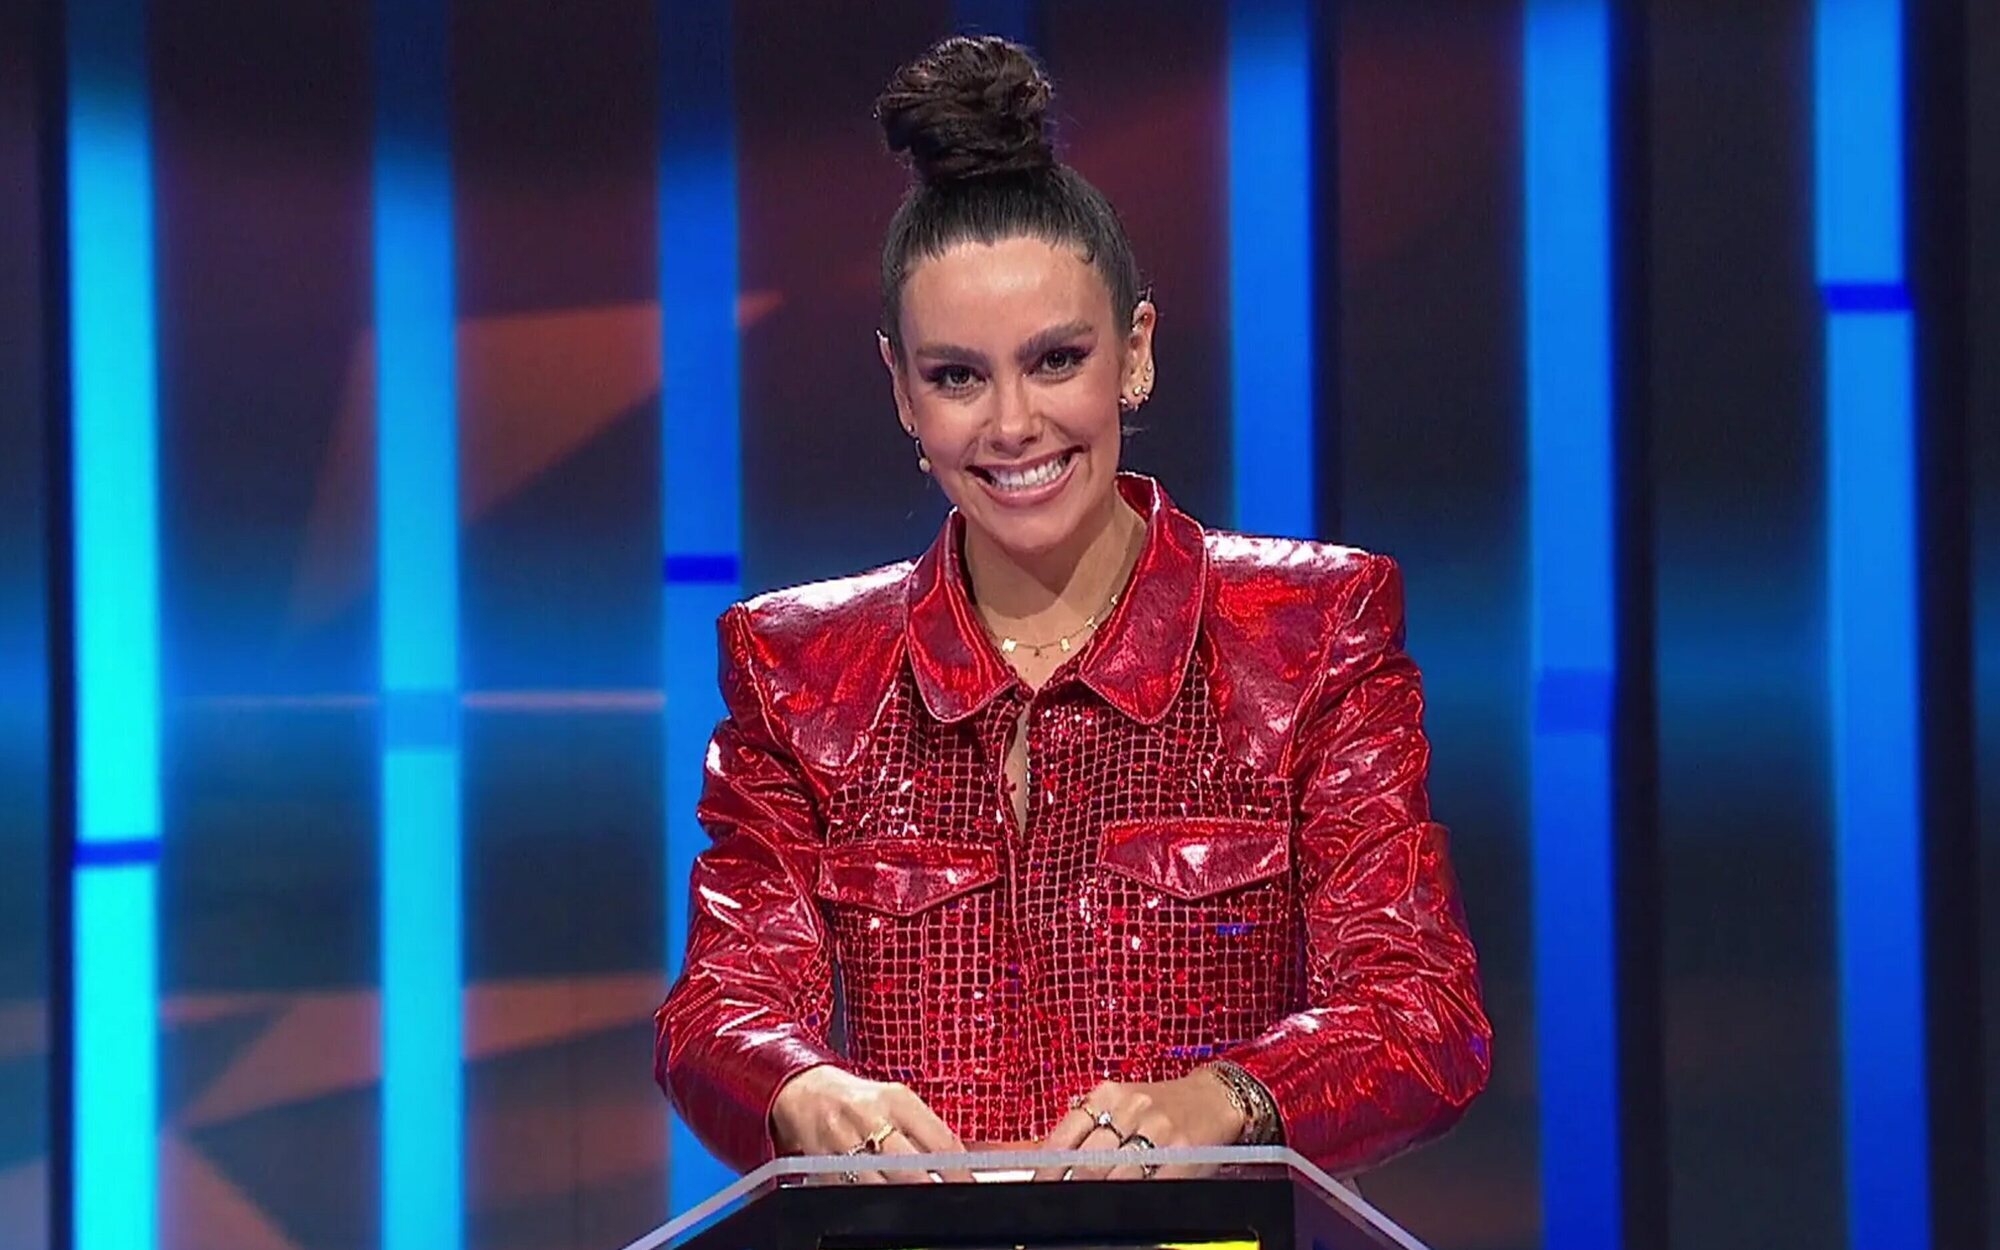 Antena 3 traslada 'Password' al prime time del sábado para enfrentarlo a 'Got Talent 9'